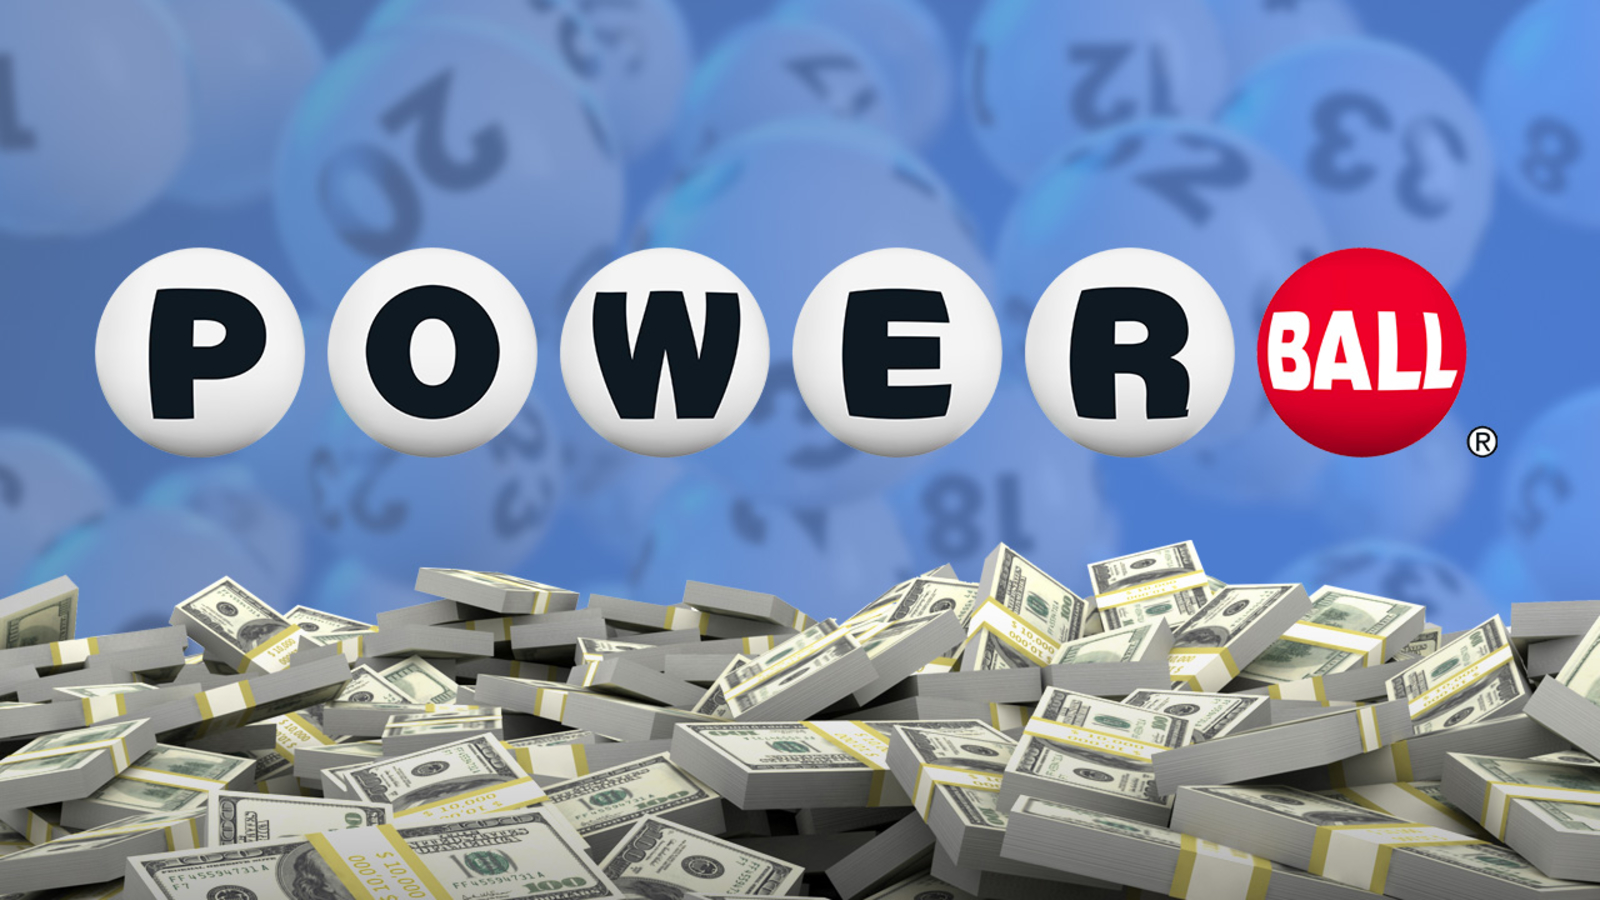 Огромный джекпот Powerball в размере 1.23 миллиарда долларов будет разыгран на этих выходных